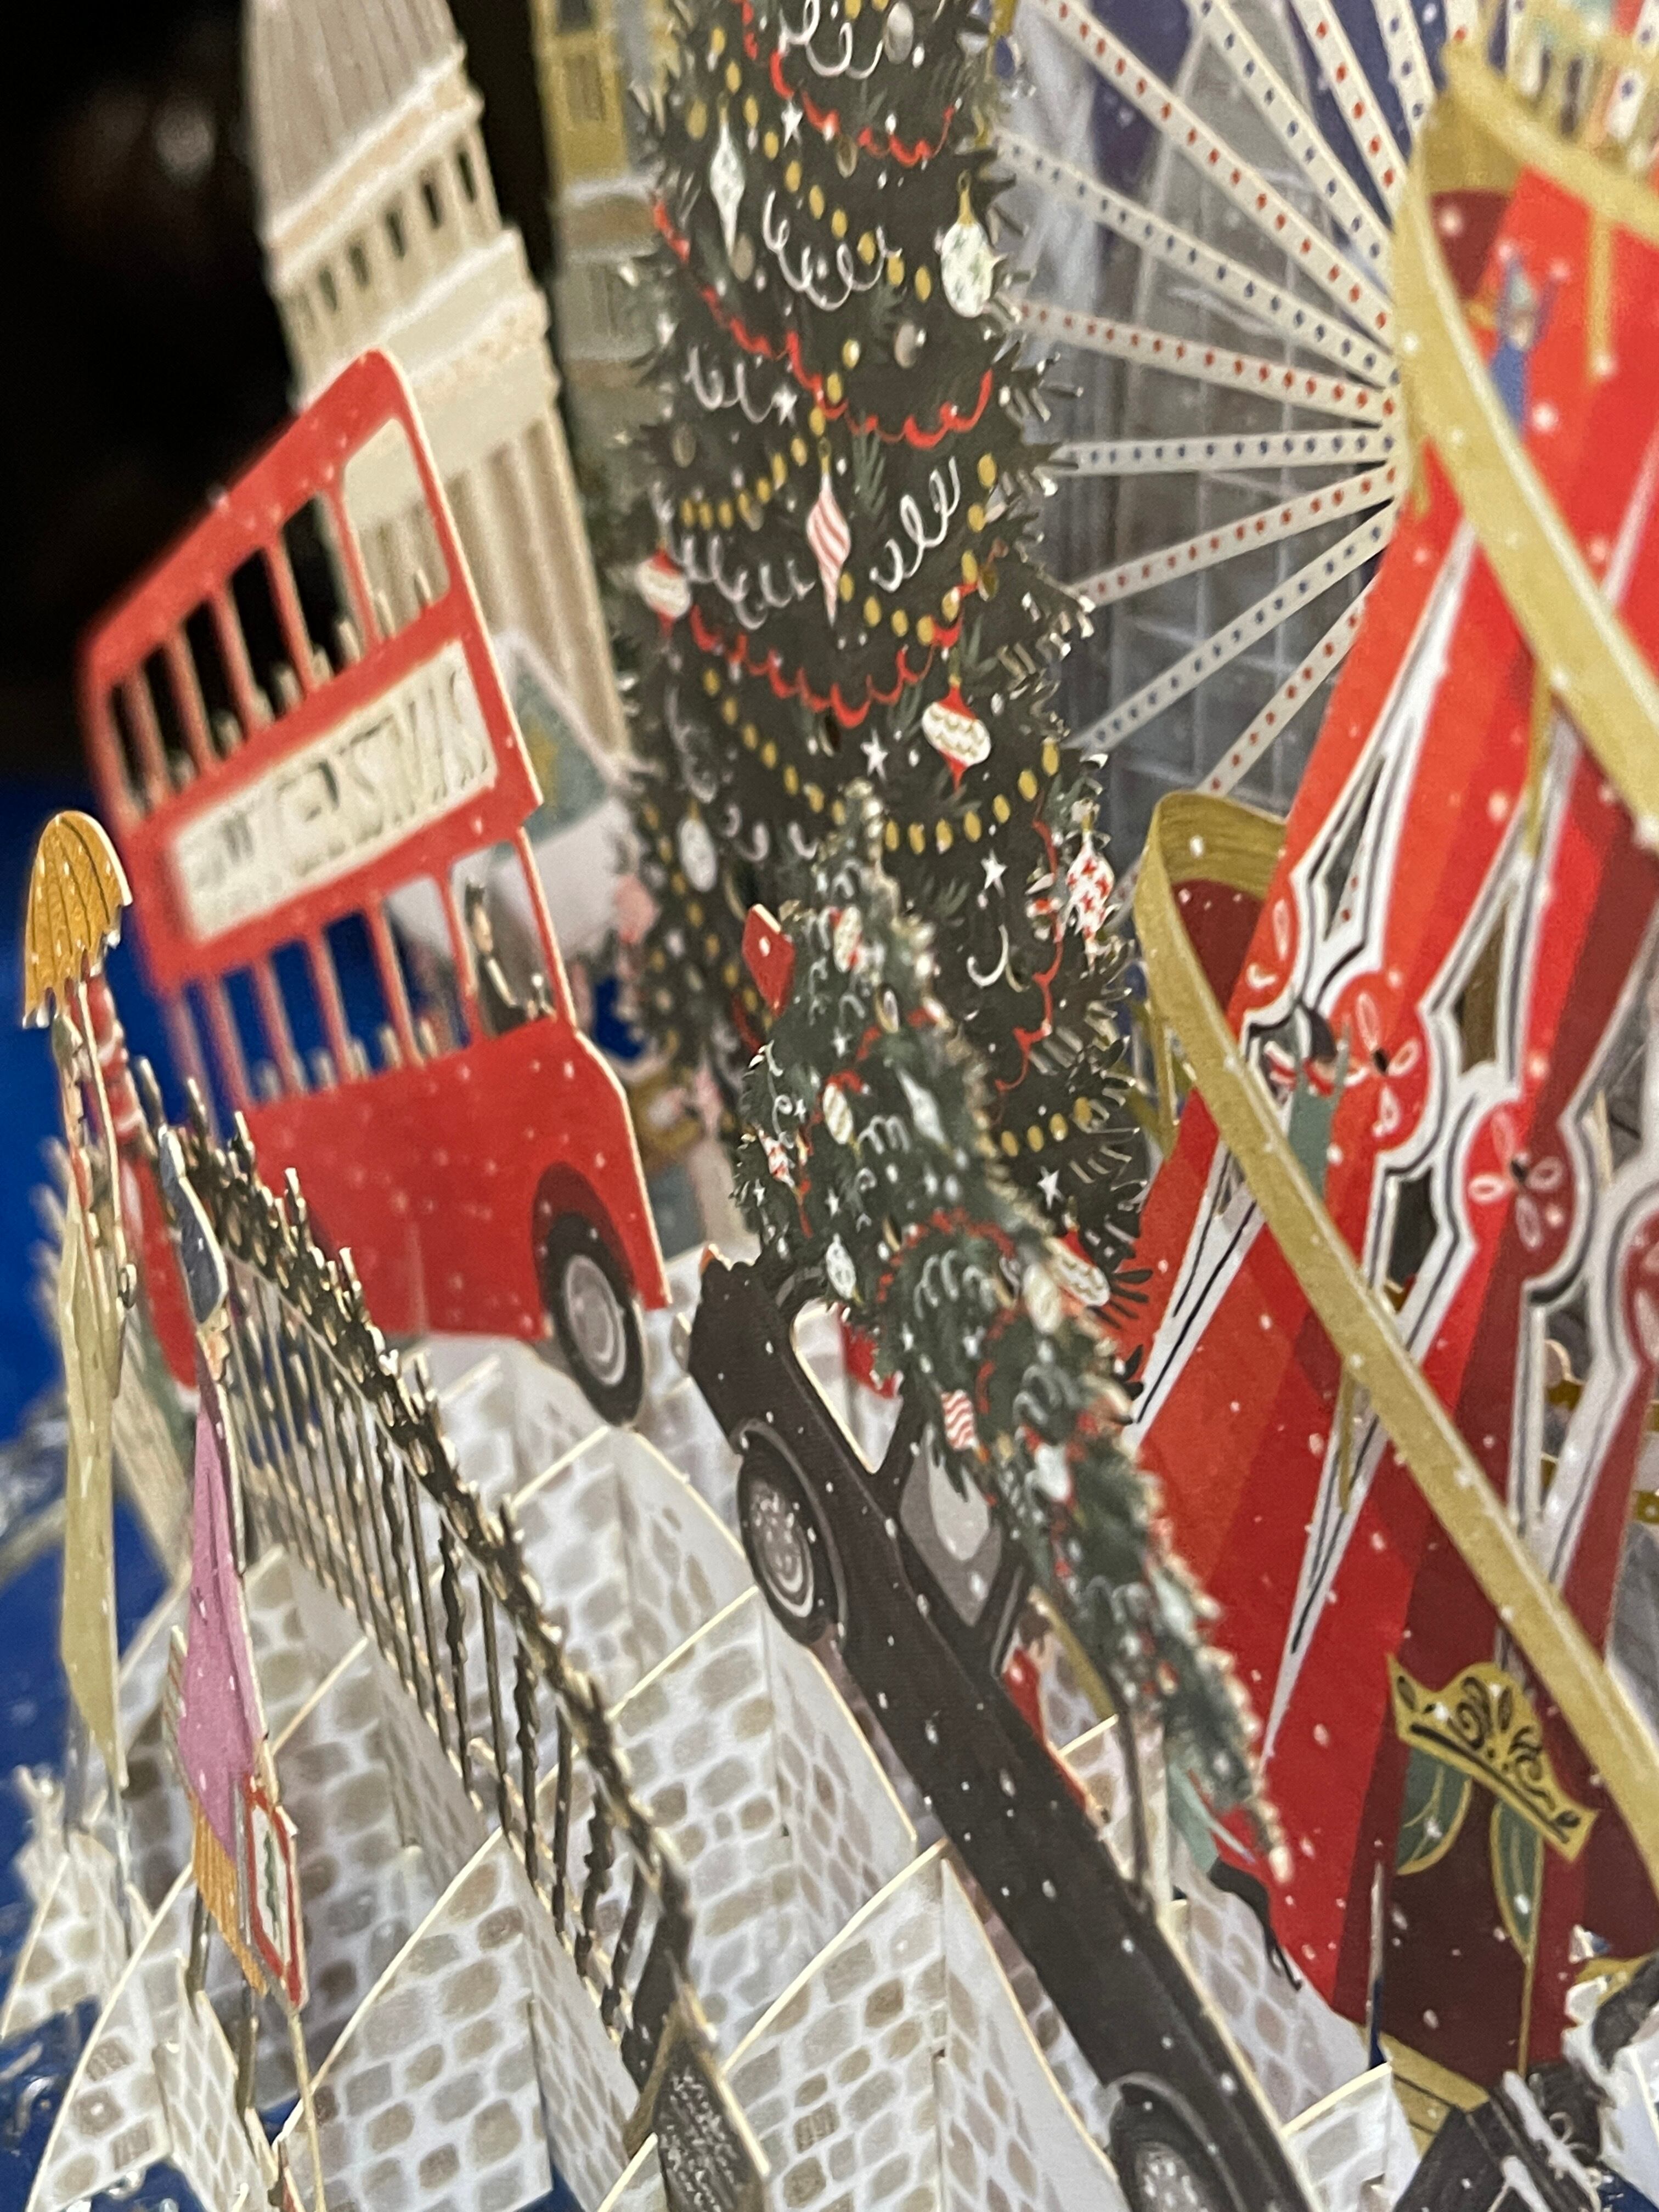 『Me & McQ』ロンドンの賑やかなクリスマスカード London 3D Christmas Cardイギリスより